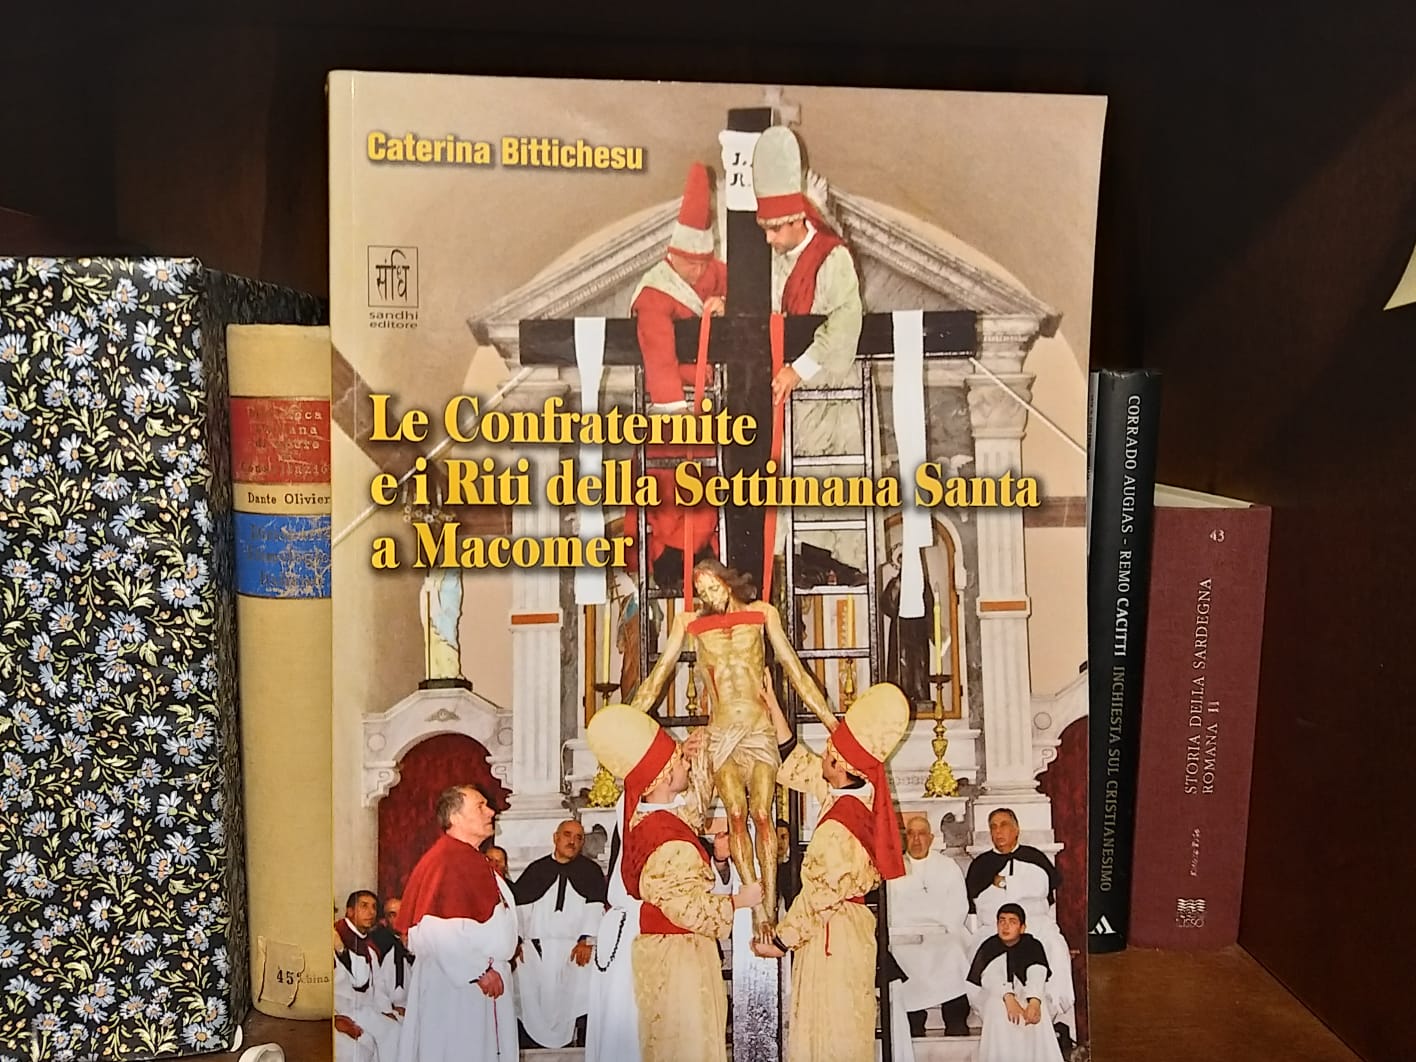 Presentato a Macomer il libro sulle Confraternite e la Settimana Santa